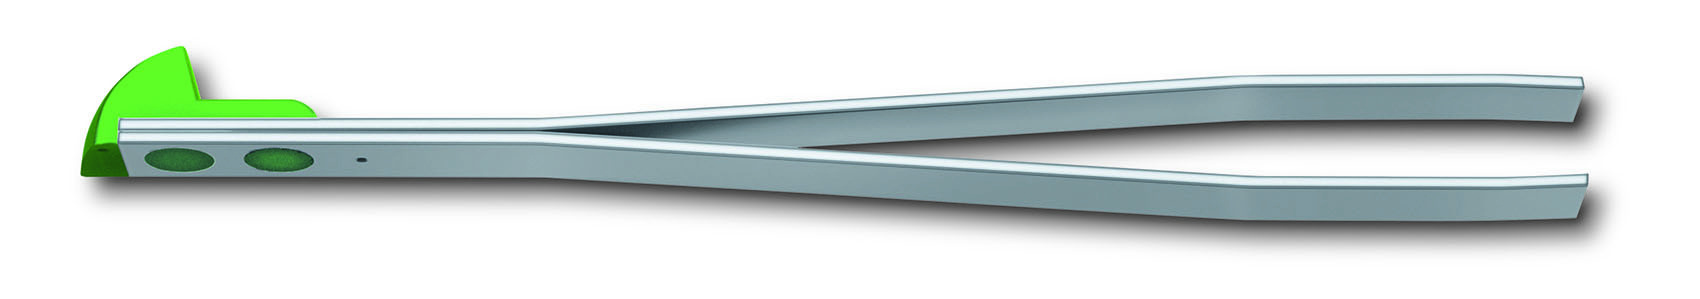 Пинцет для ножей Victorinox (A.3642.4.10) серебристый/зеленый